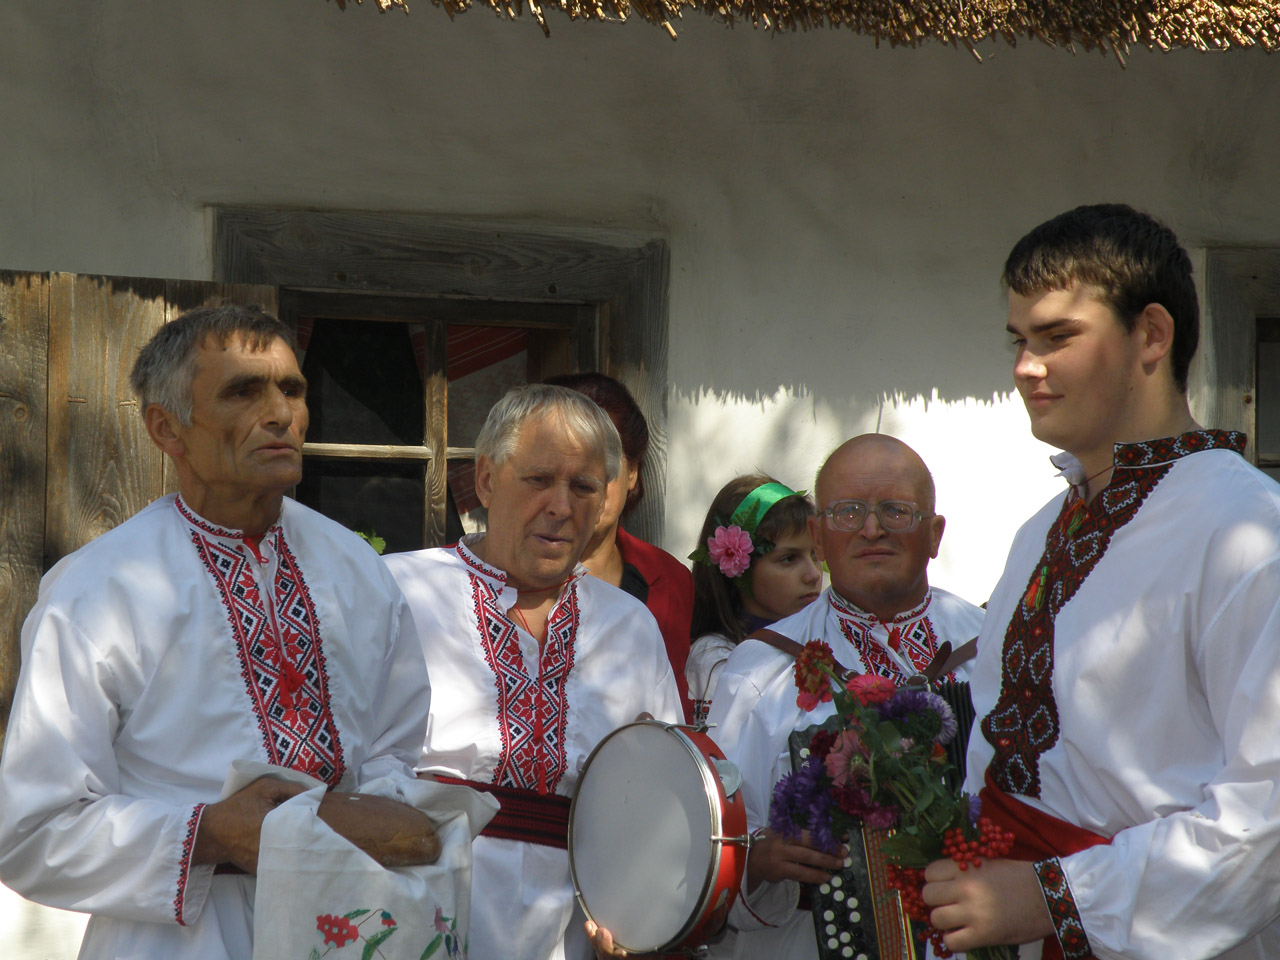 1 национальный украины. Украинская свадьба. Украинские традиции. Свадебные обряды народа Украины.